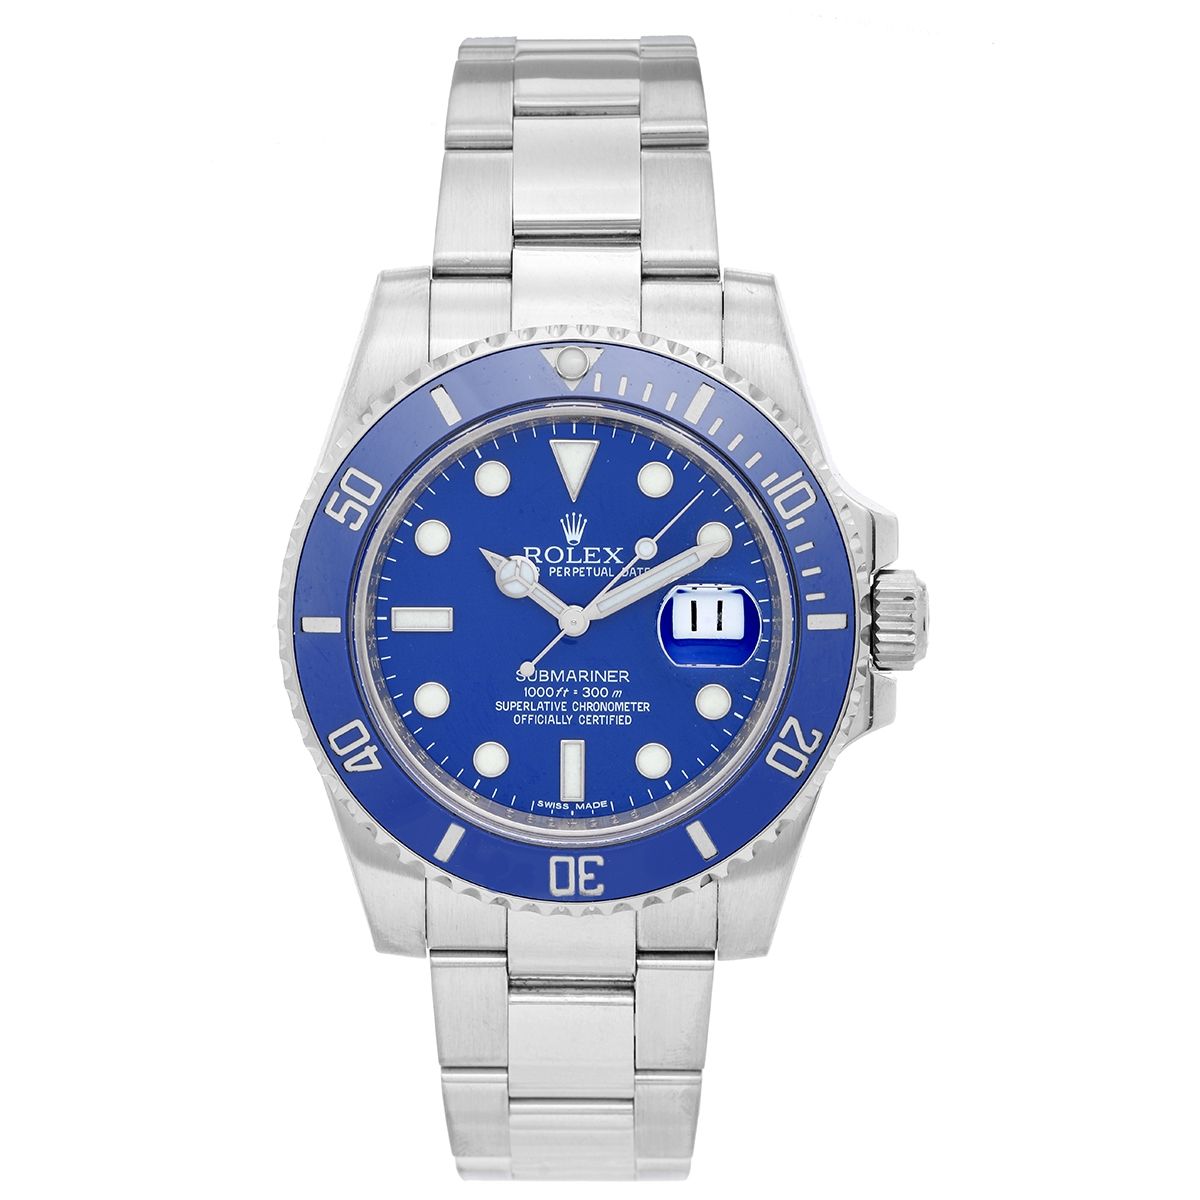 Rolex Submariner White Men's Watch 116619